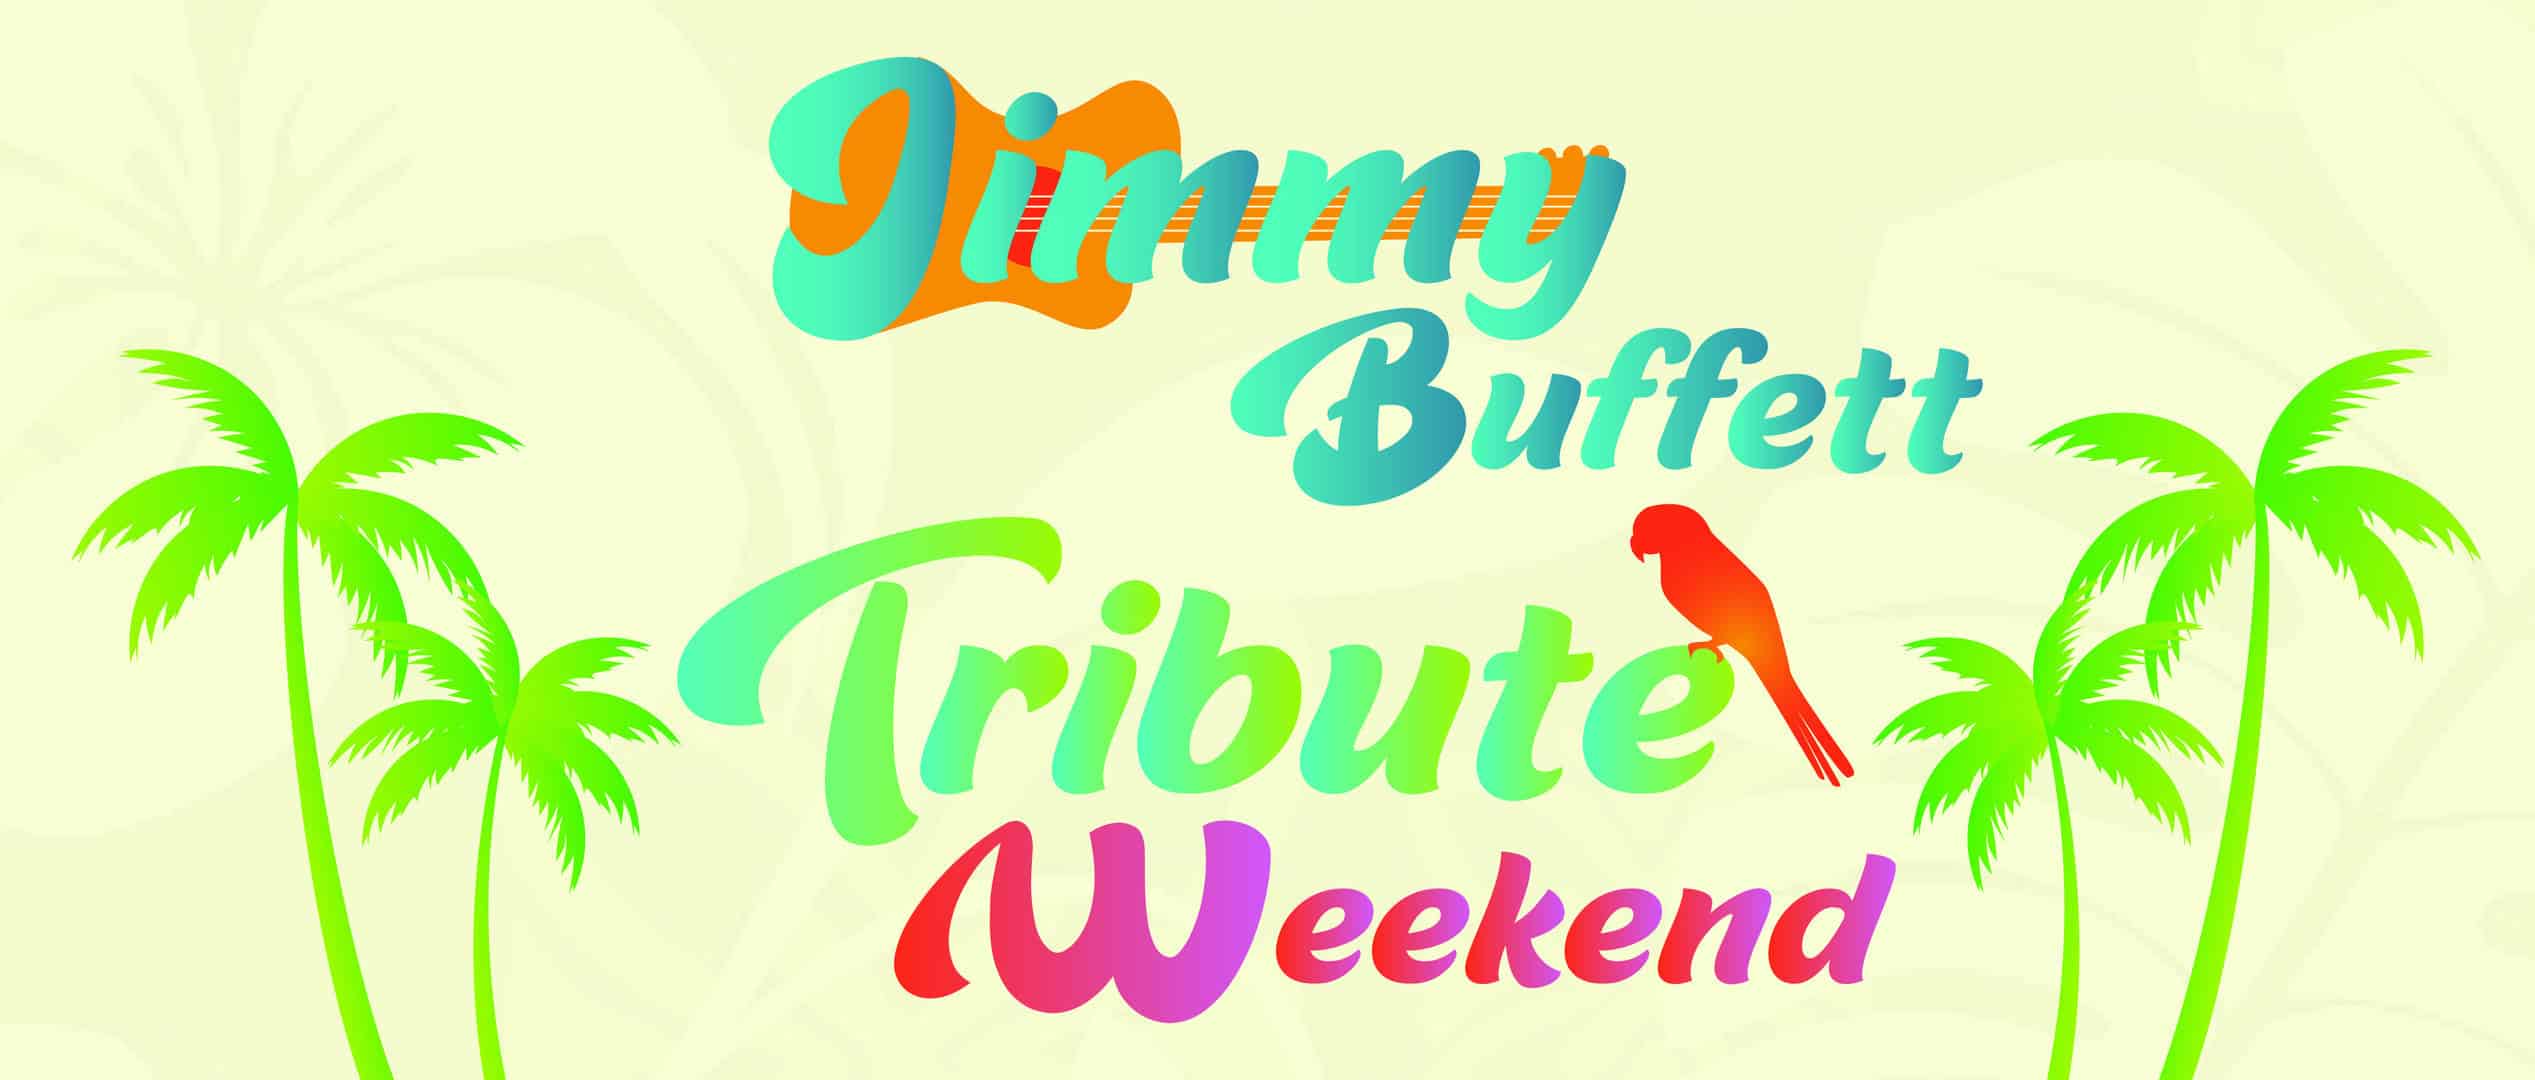 Jimmy Buffett Tribute Weekend event logo